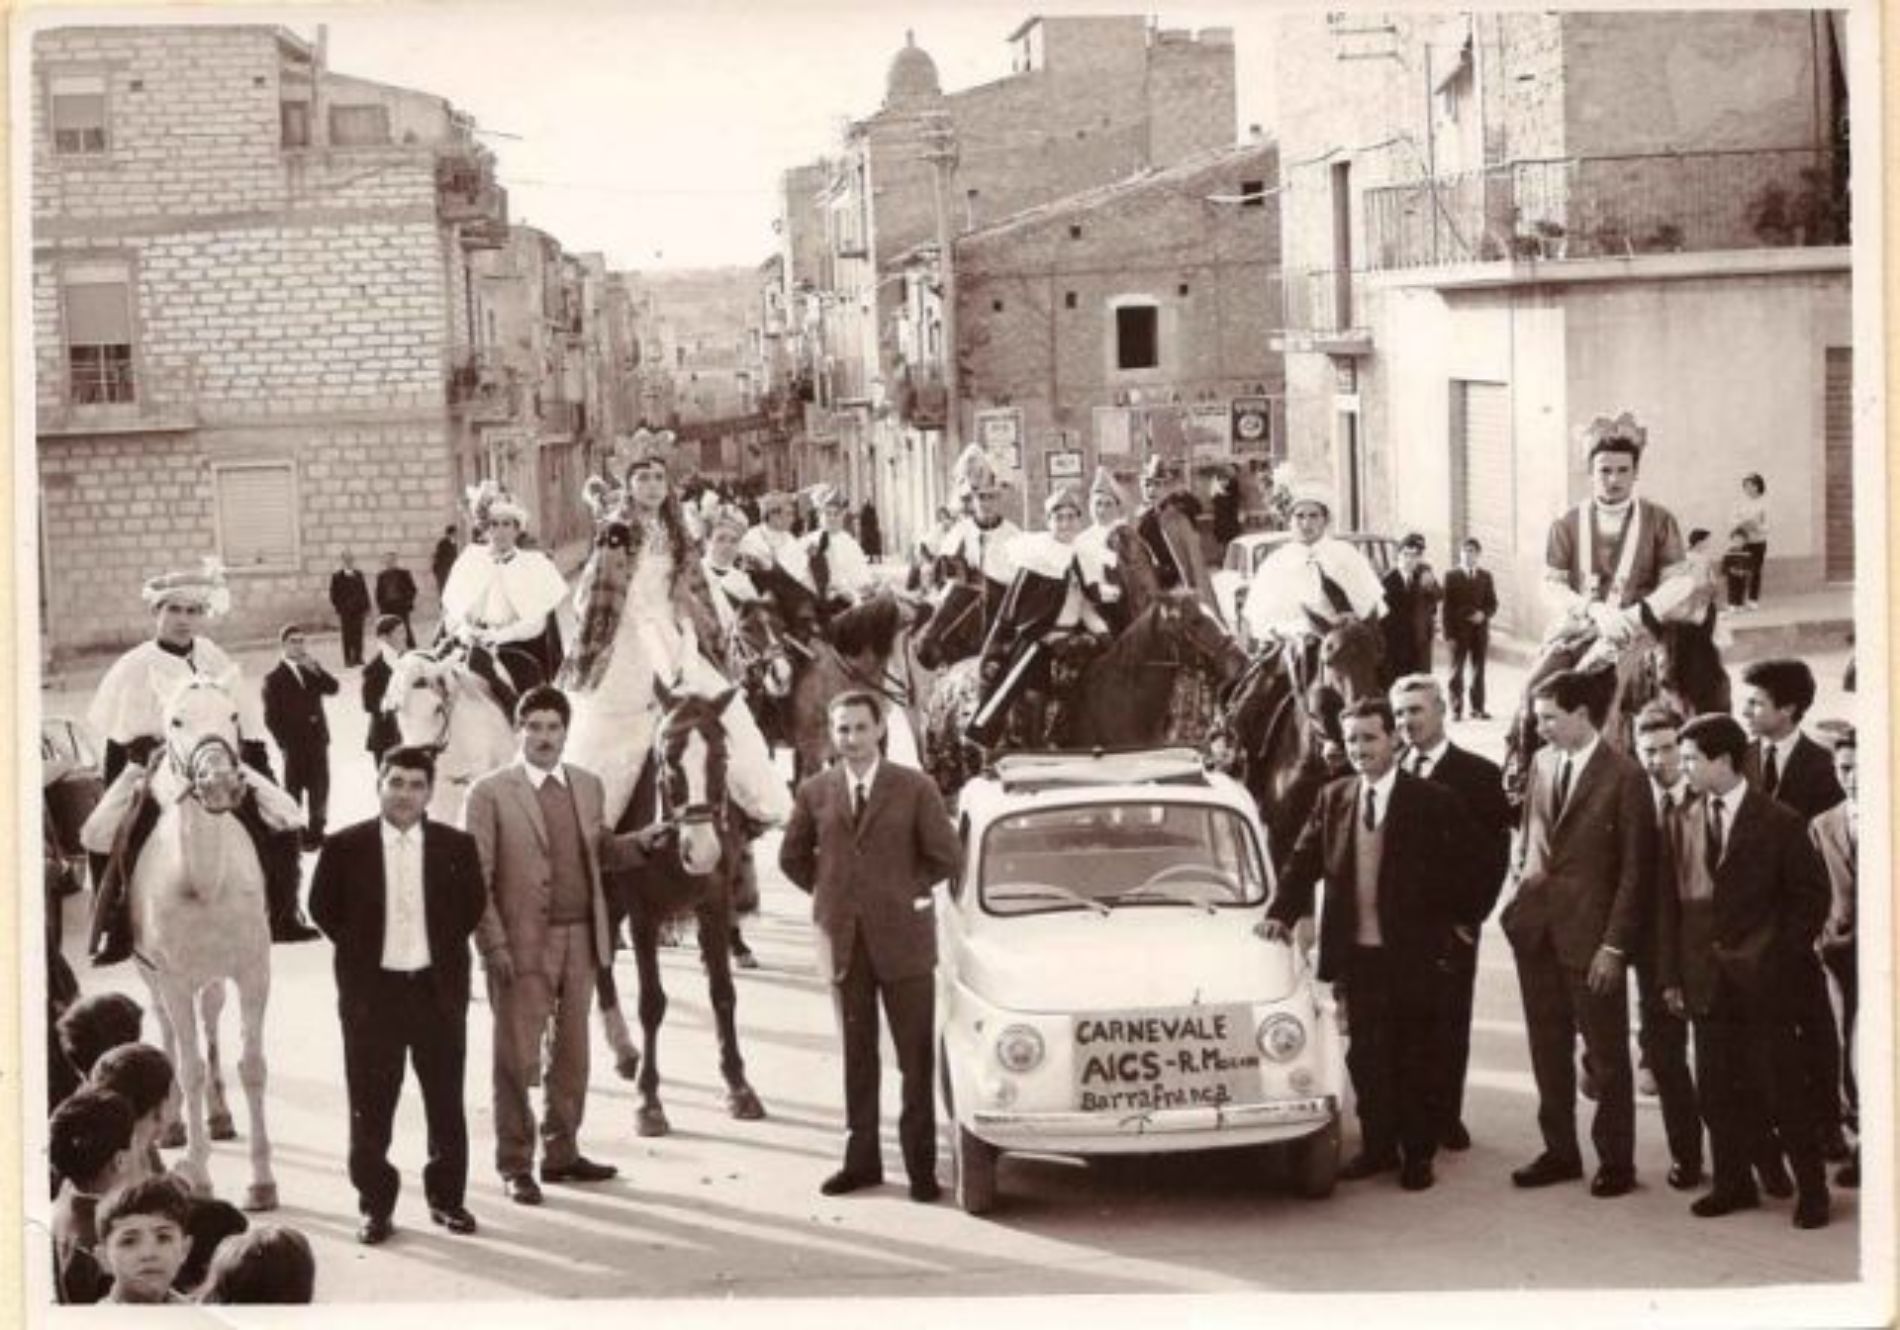 Carnevale 1966 “I PIGNATUNA”: storia del rilancio dell’antica tradizione barrese